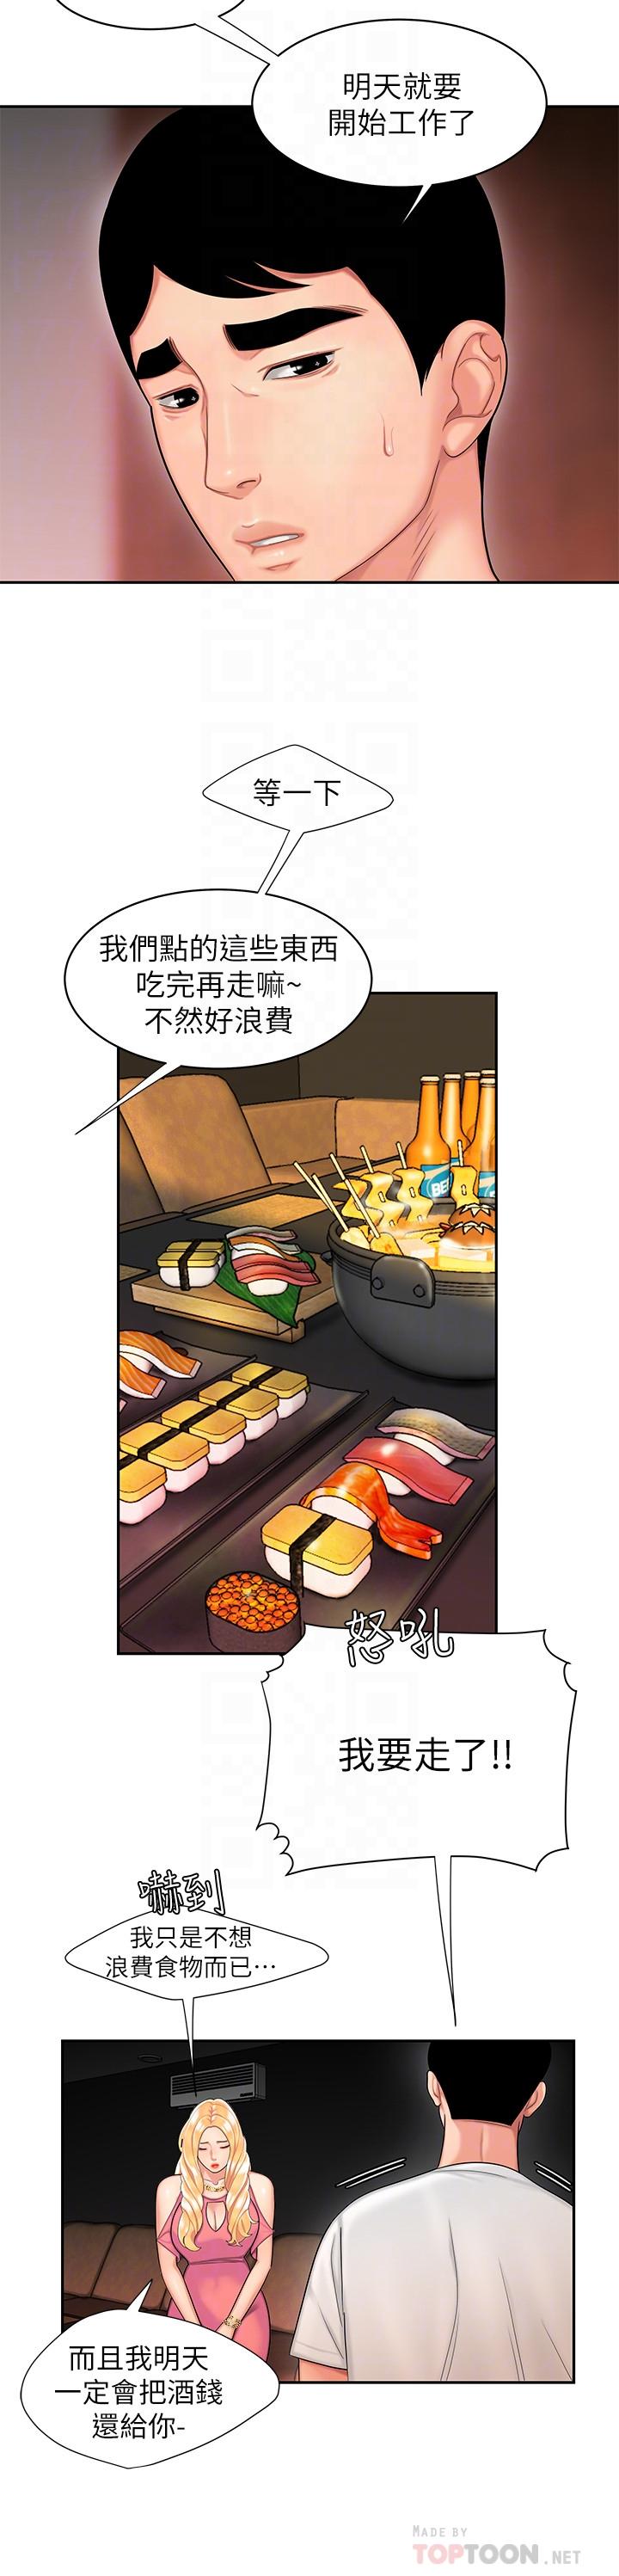 韩国污漫画 幸福外送員 第12话-炸鸡店老板不间断的诱惑 16